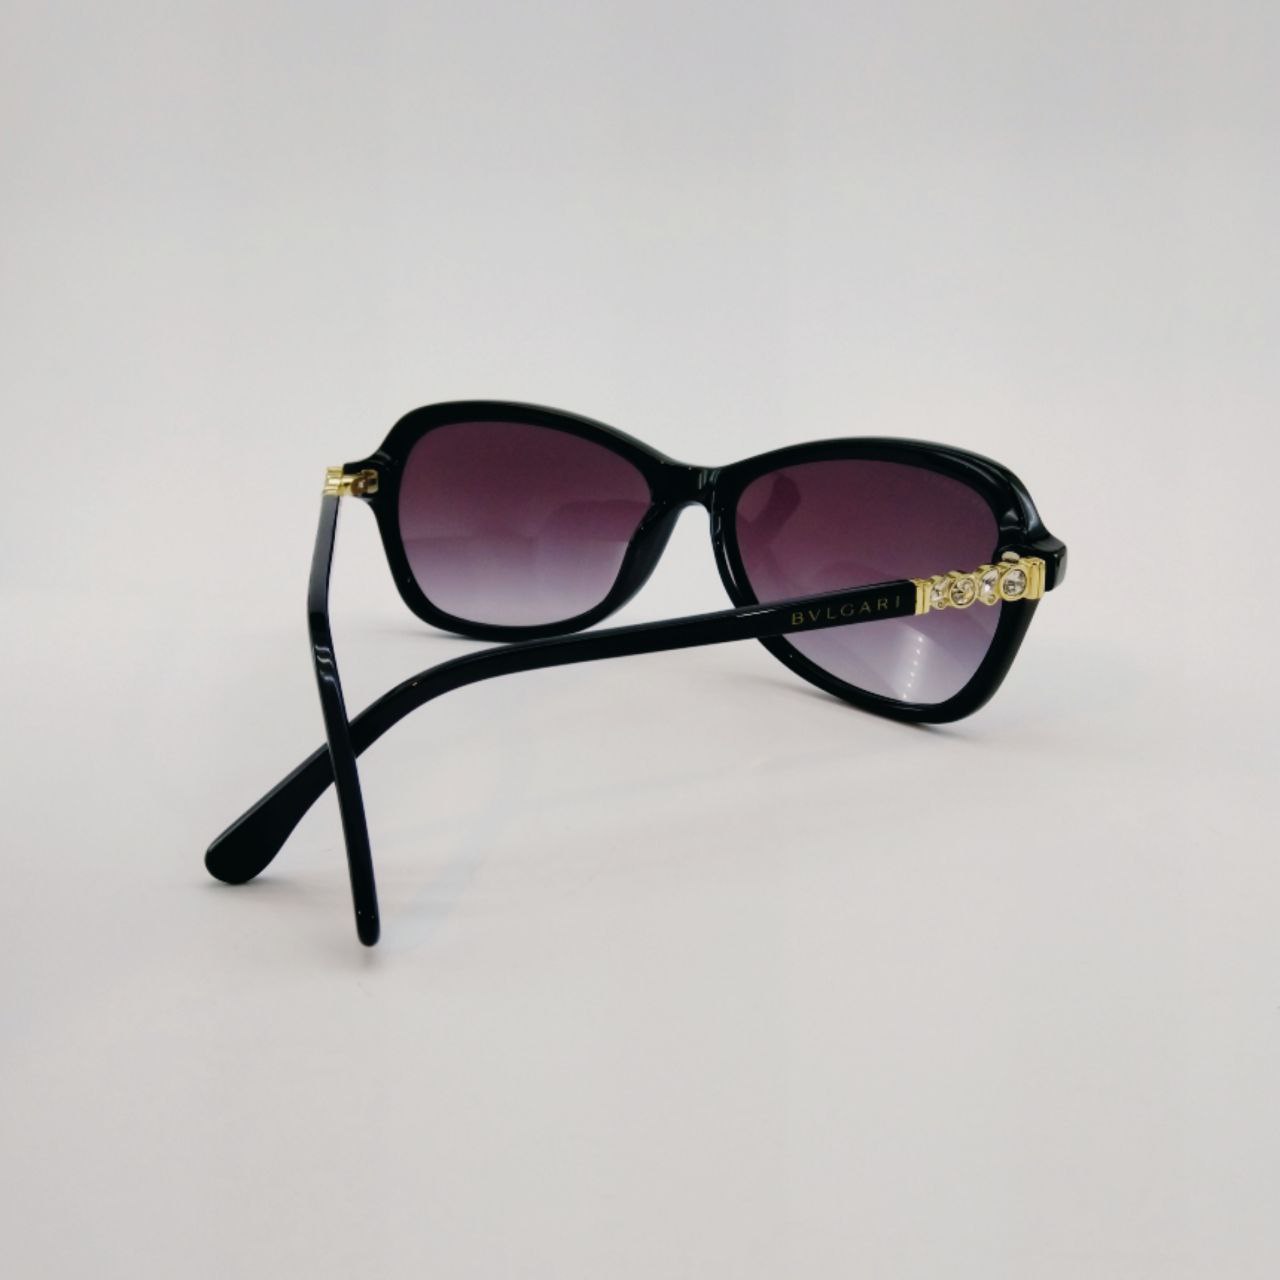 عینک آفتابی زنانه بولگاری مدل BV 8196B C1 -  - 6